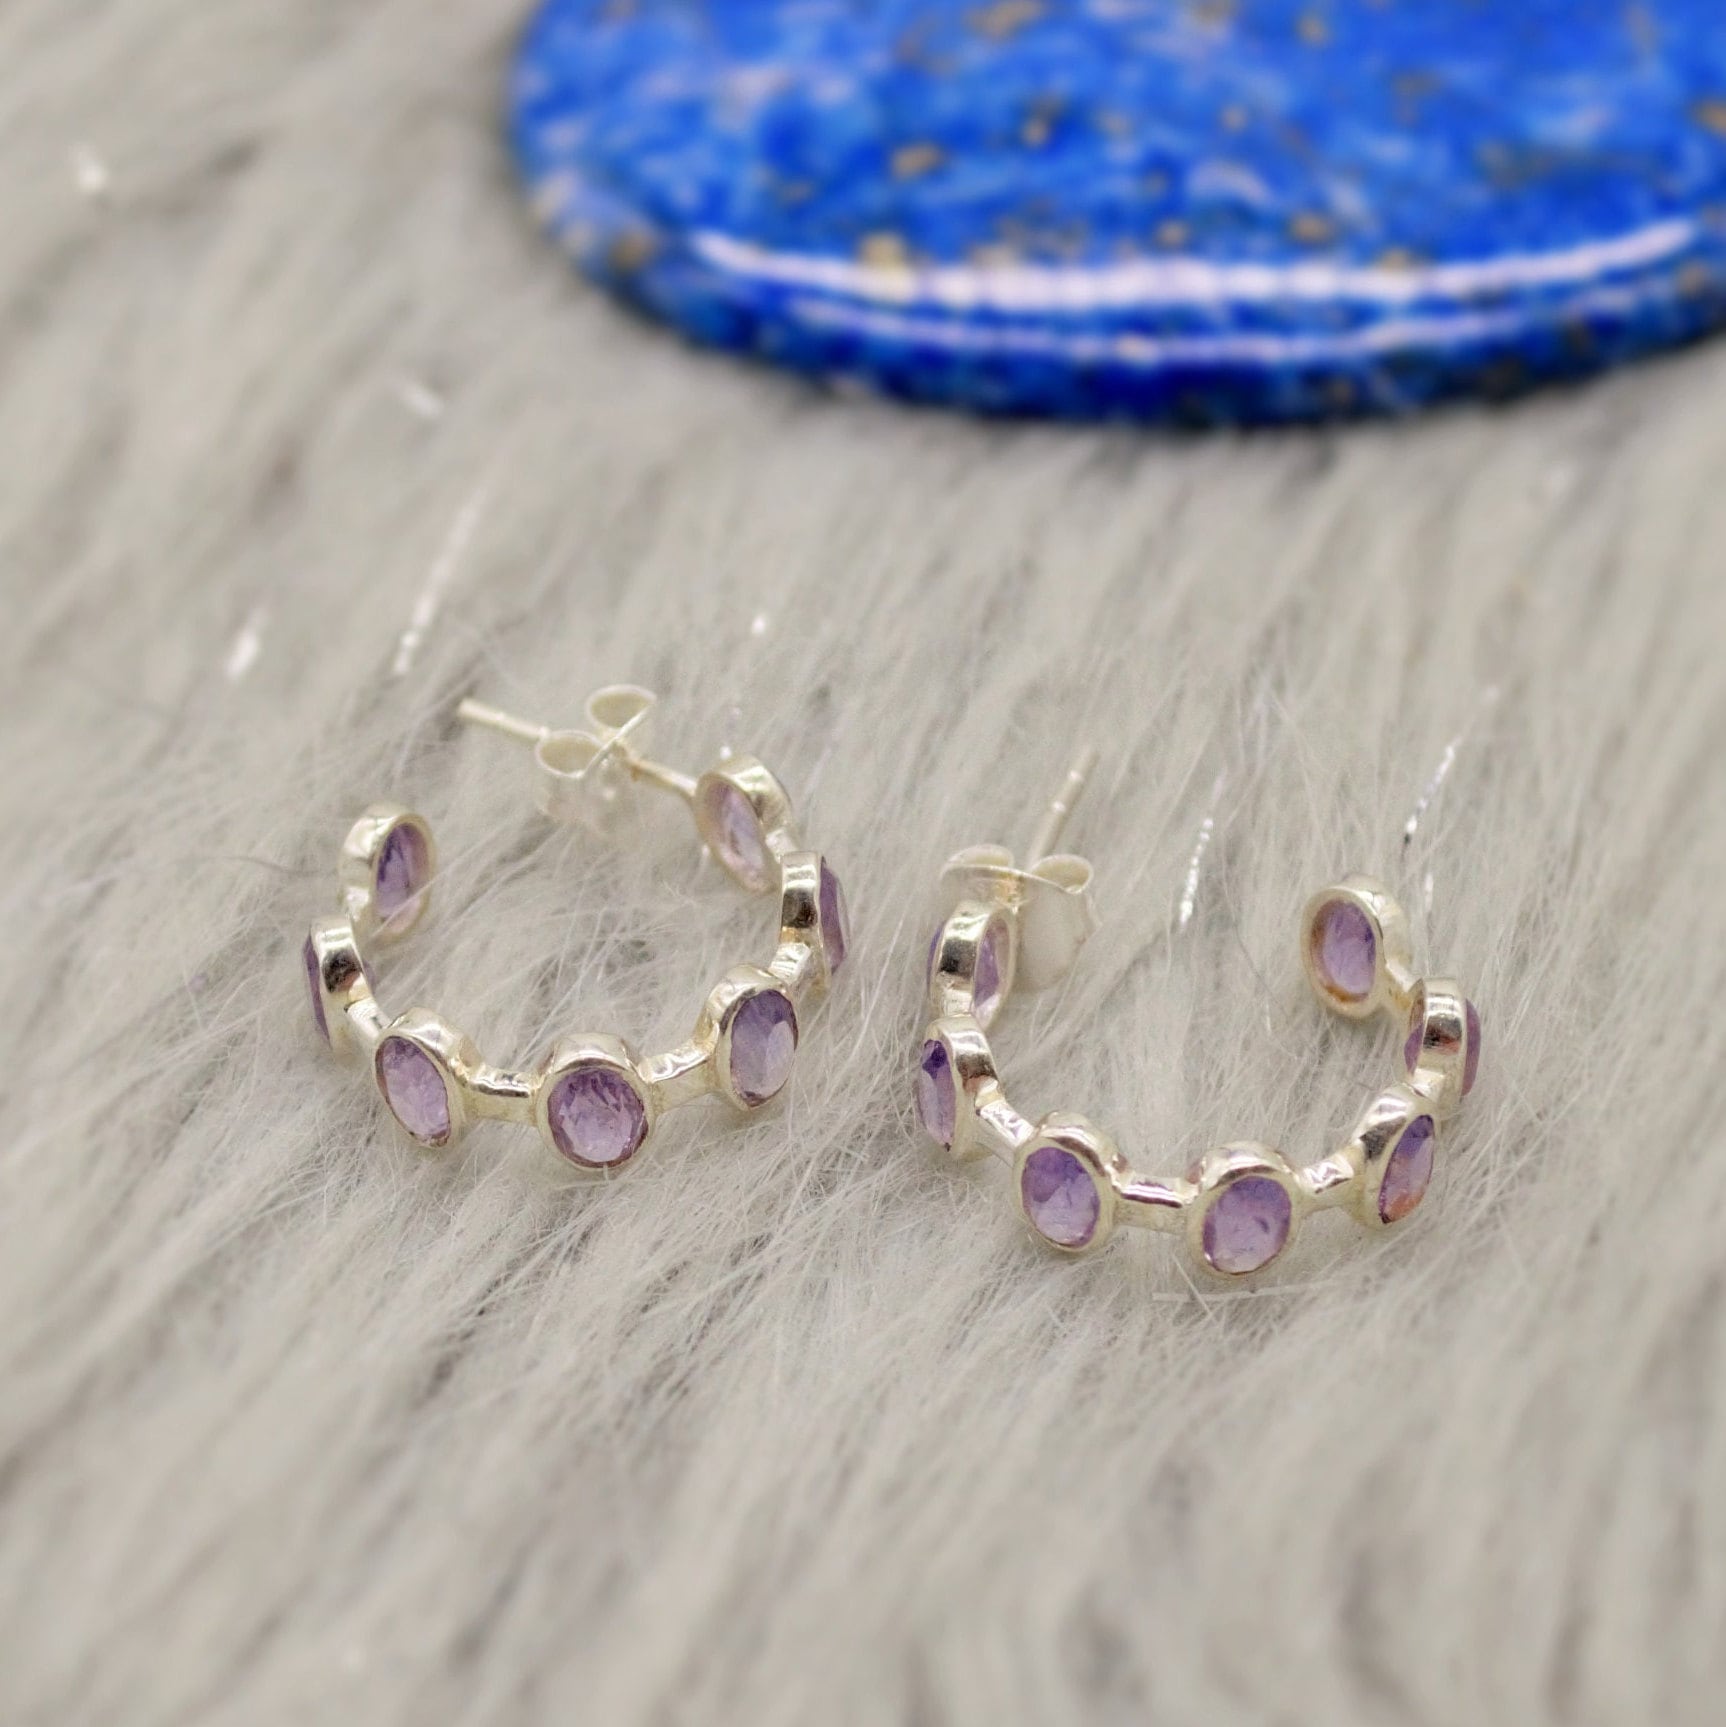 Amethyst Sterling Silver Hoop Earrings, Amethyst Jewelry, February Birthstone Earrings, Minimalist Purple Earrings, Unique Gifts For Her